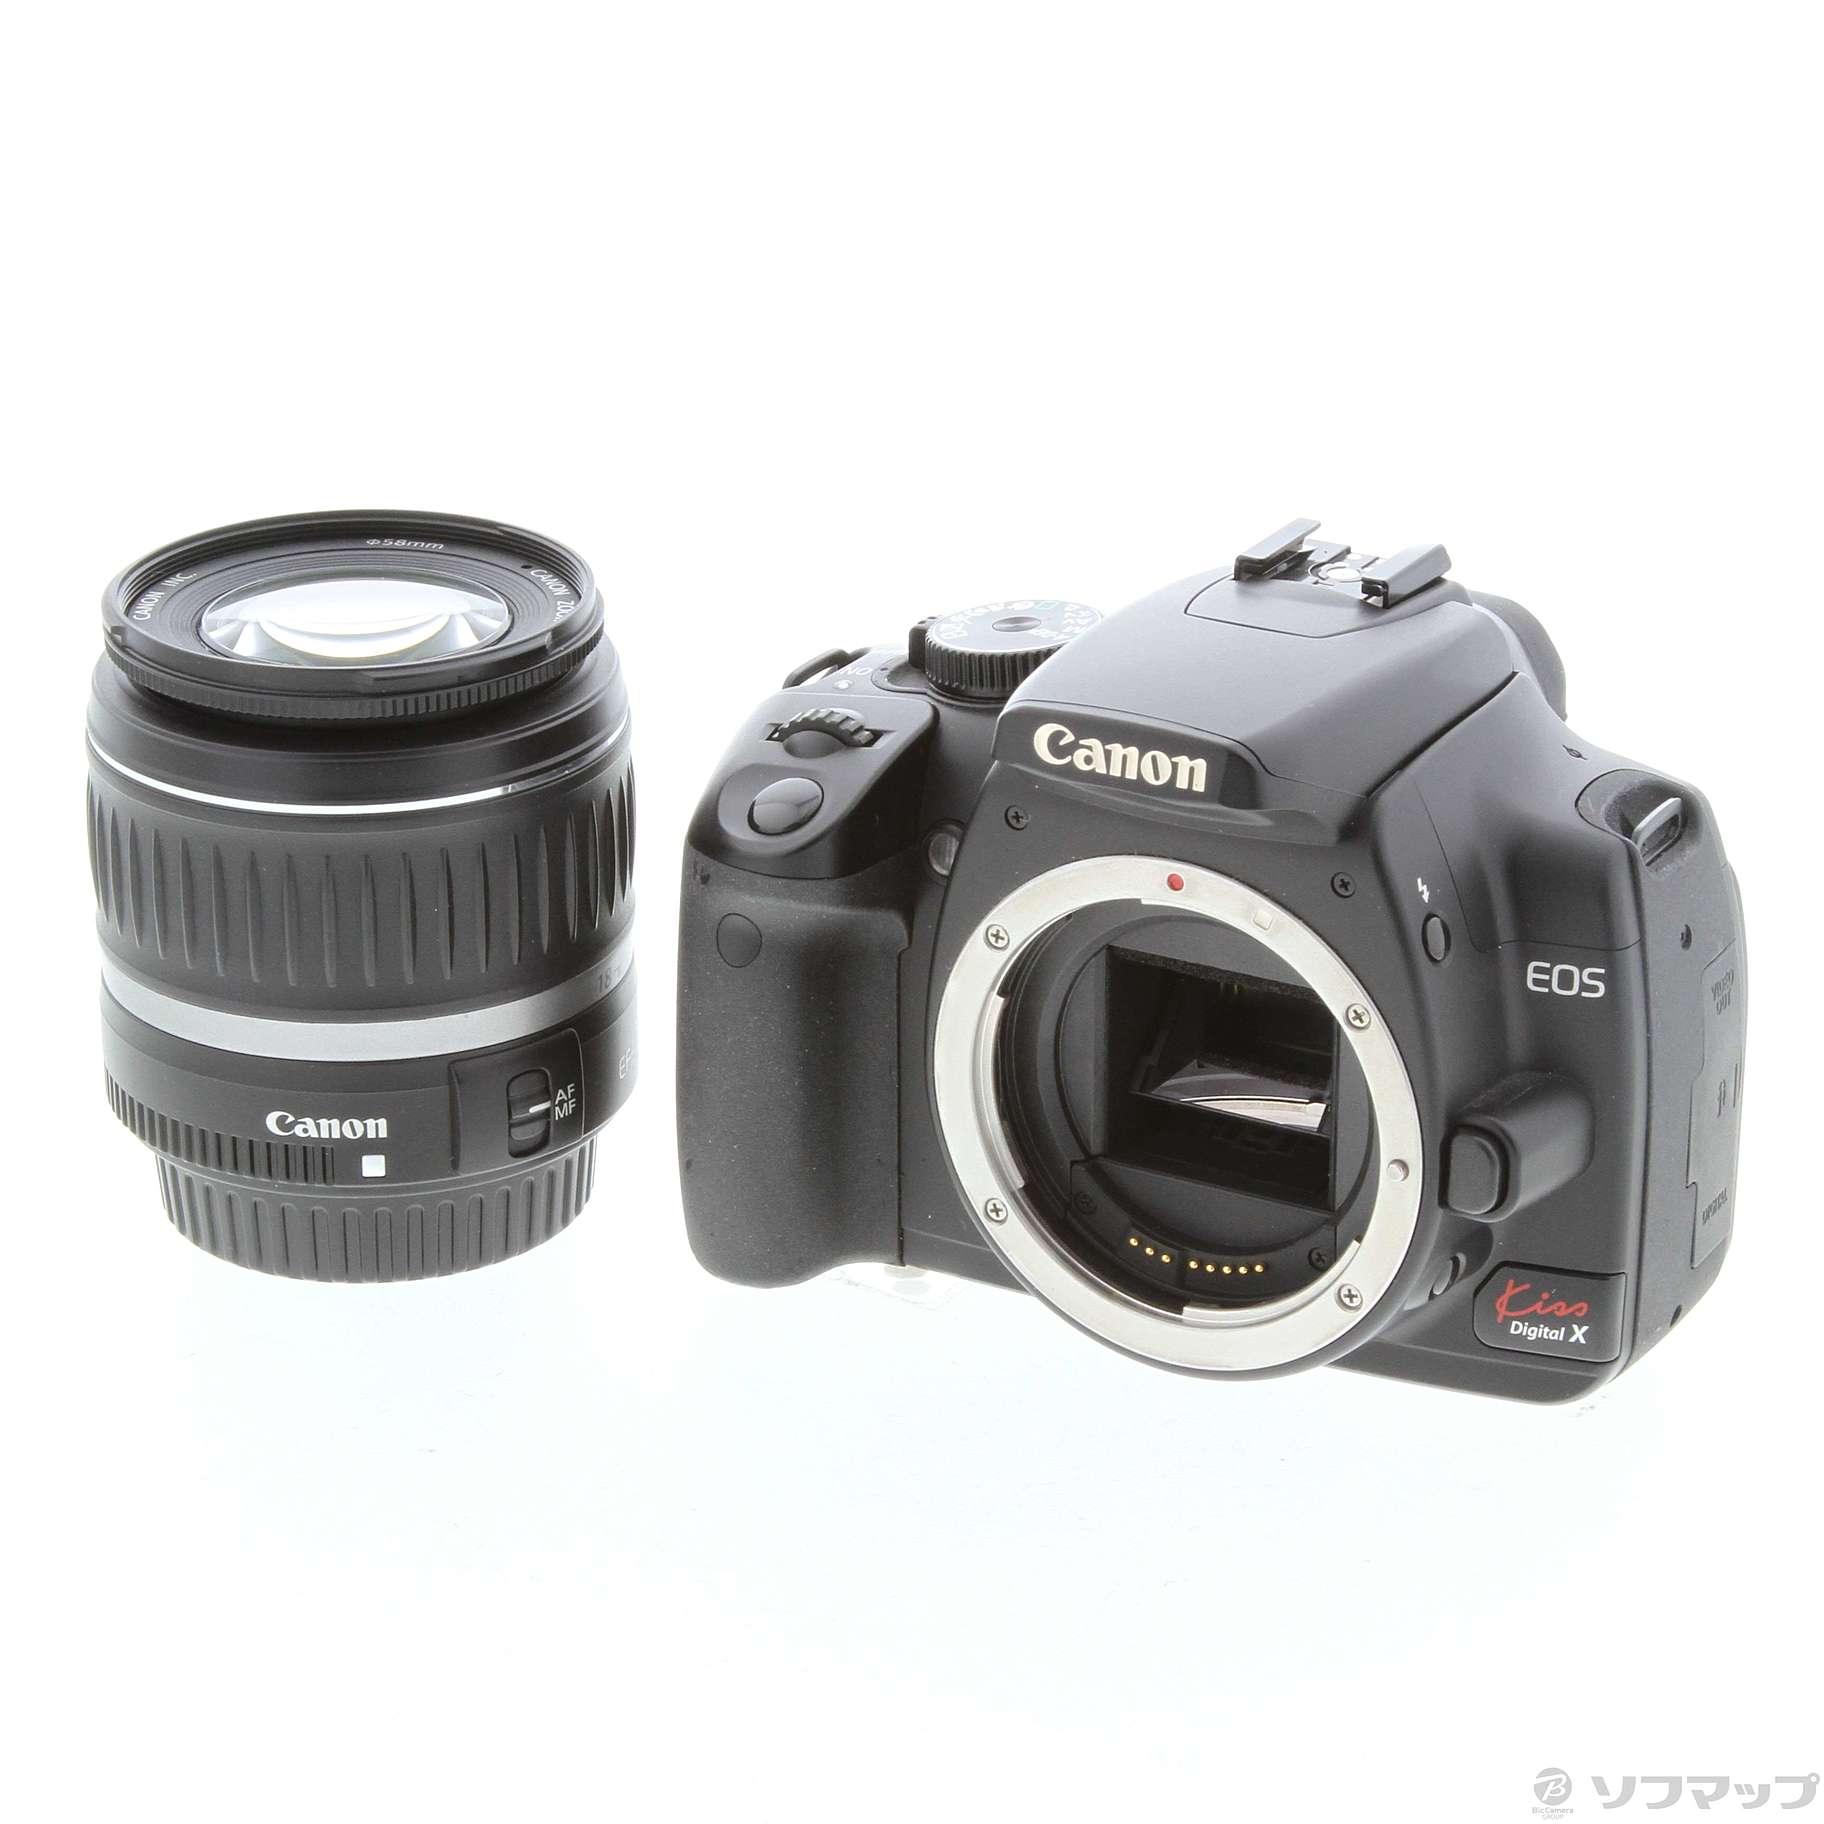 Canon デジタル一眼レフカメラ EOS Kiss デジタル X レンズキット ブラック KISSDXB-LKIT - 4